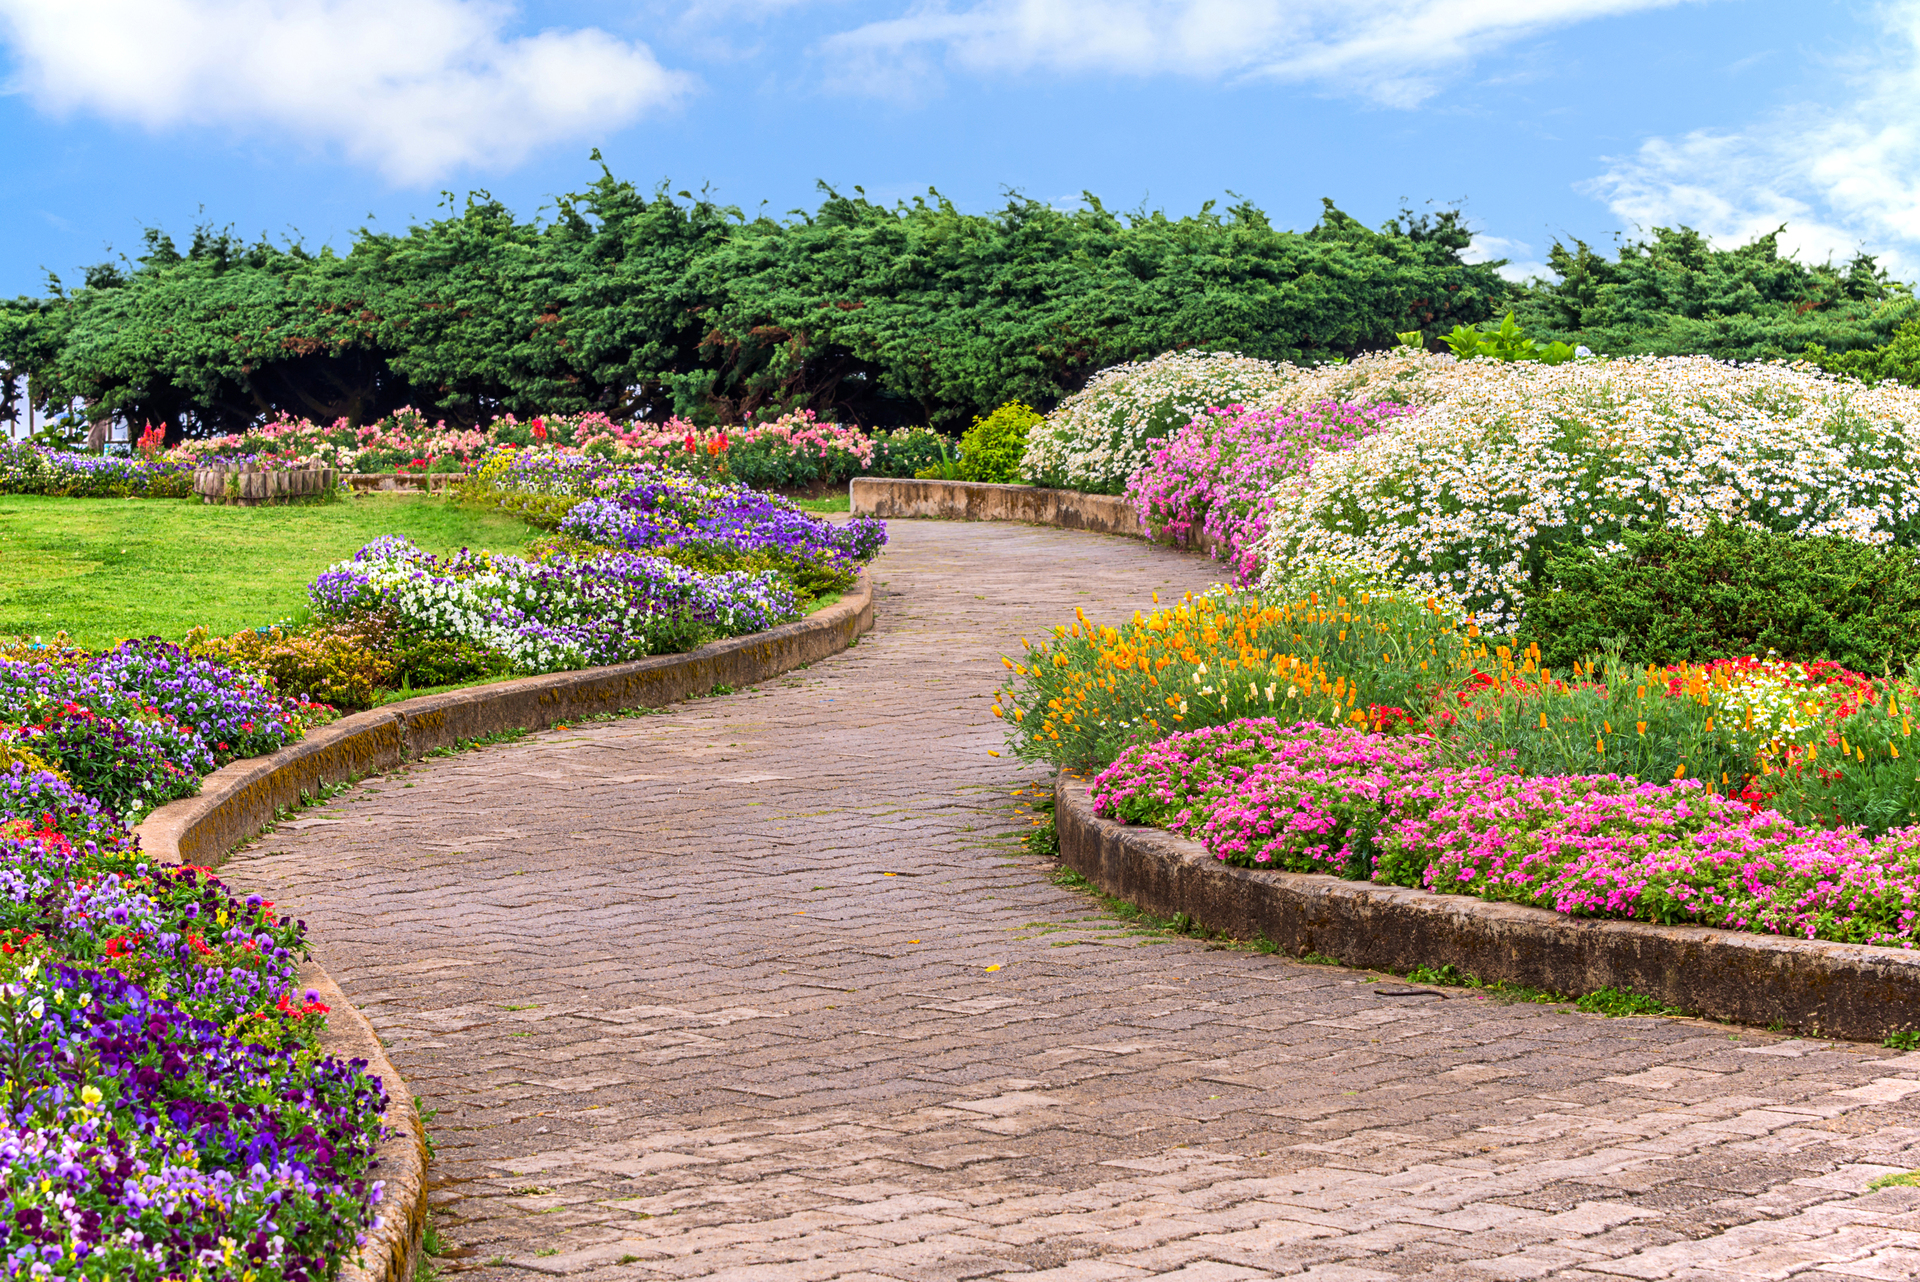 Architektura krajobrazu w ogrodzie. Ścieżka w ogrodzie udekorowana kwiatami